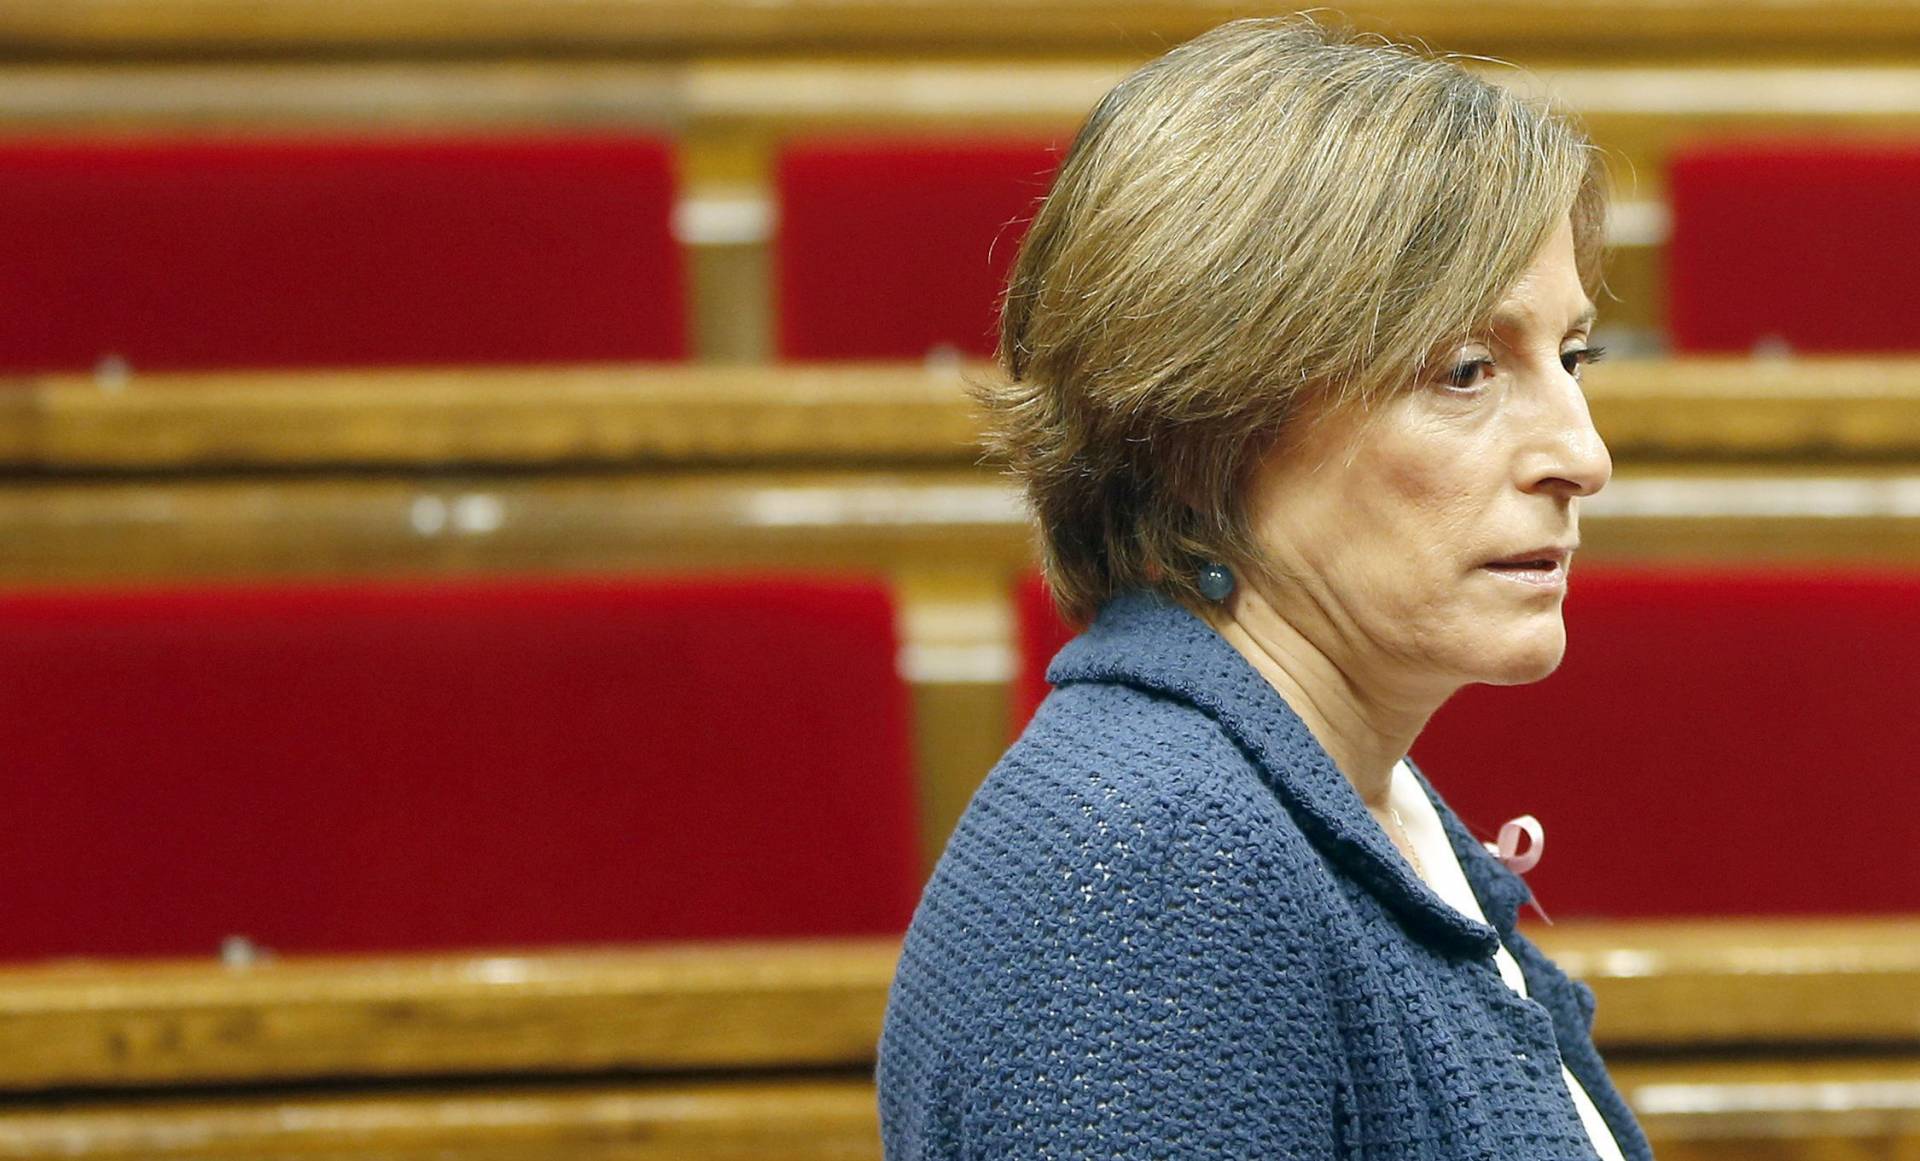 La presidenta del Parlament de Cataluña, Carme Forcadell.